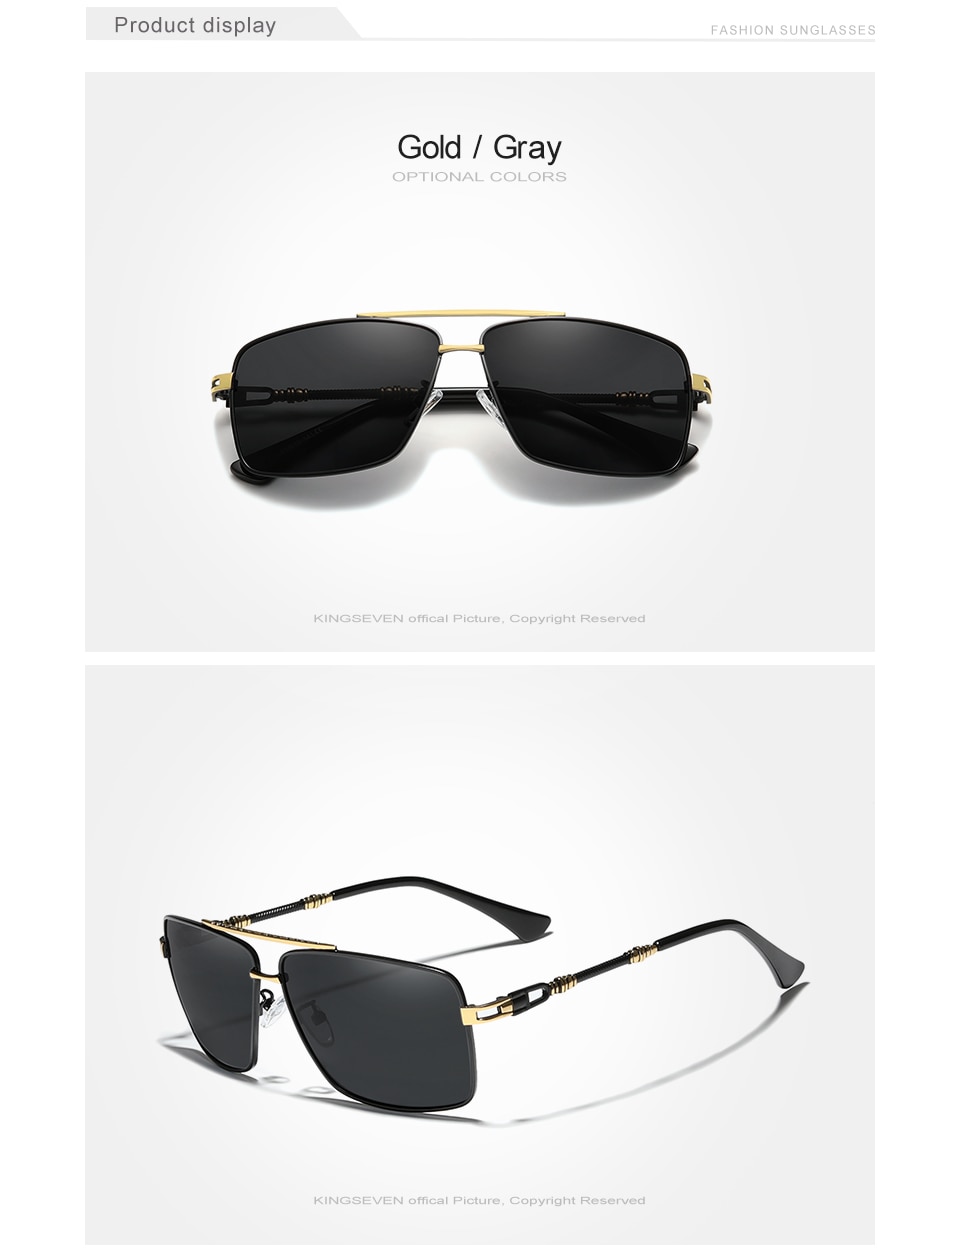 KINGSEVEN Fashion Polarized Sunglasses Men's